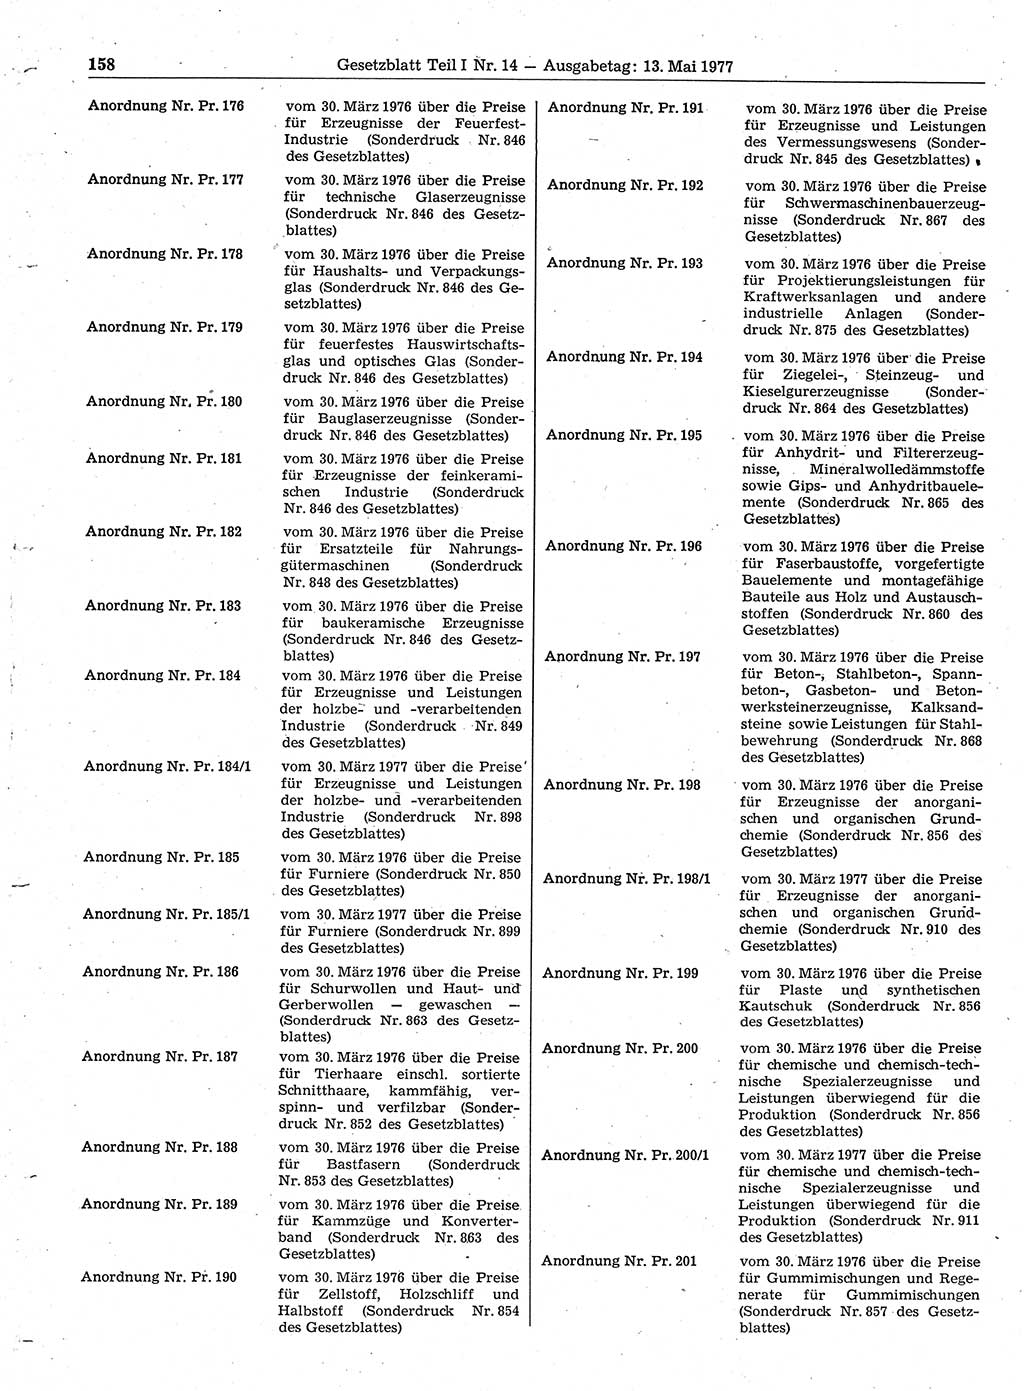 Gesetzblatt (GBl.) der Deutschen Demokratischen Republik (DDR) Teil Ⅰ 1977, Seite 158 (GBl. DDR Ⅰ 1977, S. 158)